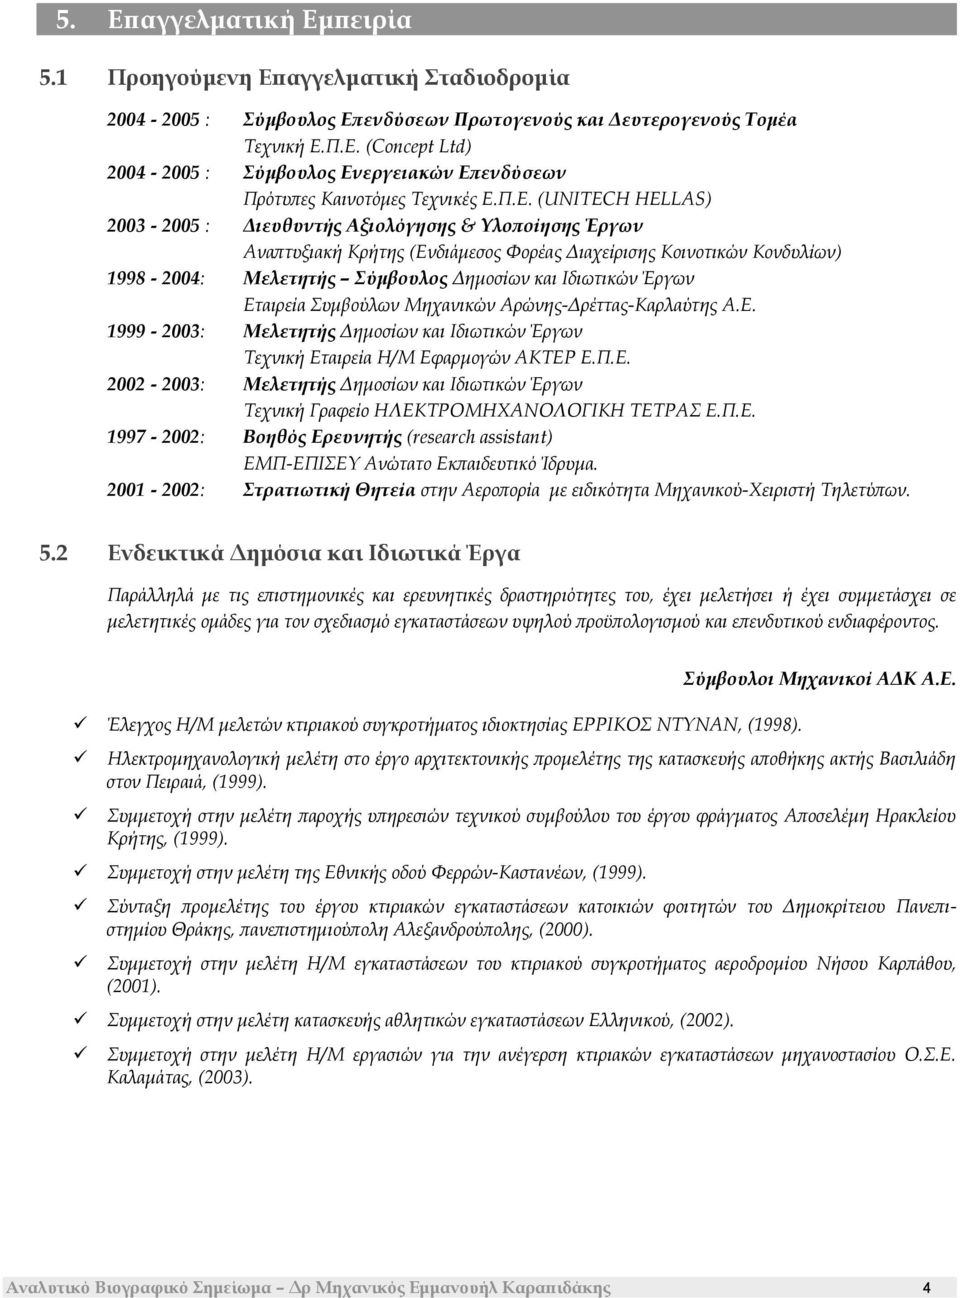 Ιδιωτικών Έργων Εταιρεία Συμβούλων Μηχανικών Αρώνης-Δρέττας-Καρλαύτης Α.Ε. 1999-2003: Μελετητής Δημοσίων και Ιδιωτικών Έργων Τεχνική Εταιρεία Η/Μ Εφαρμογών ΑΚΤΕΡ Ε.Π.Ε. 2002-2003: Μελετητής Δημοσίων και Ιδιωτικών Έργων Τεχνική Γραφείο ΗΛΕΚΤΡΟΜΗΧΑΝΟΛΟΓΙΚΗ ΤΕΤΡΑΣ Ε.